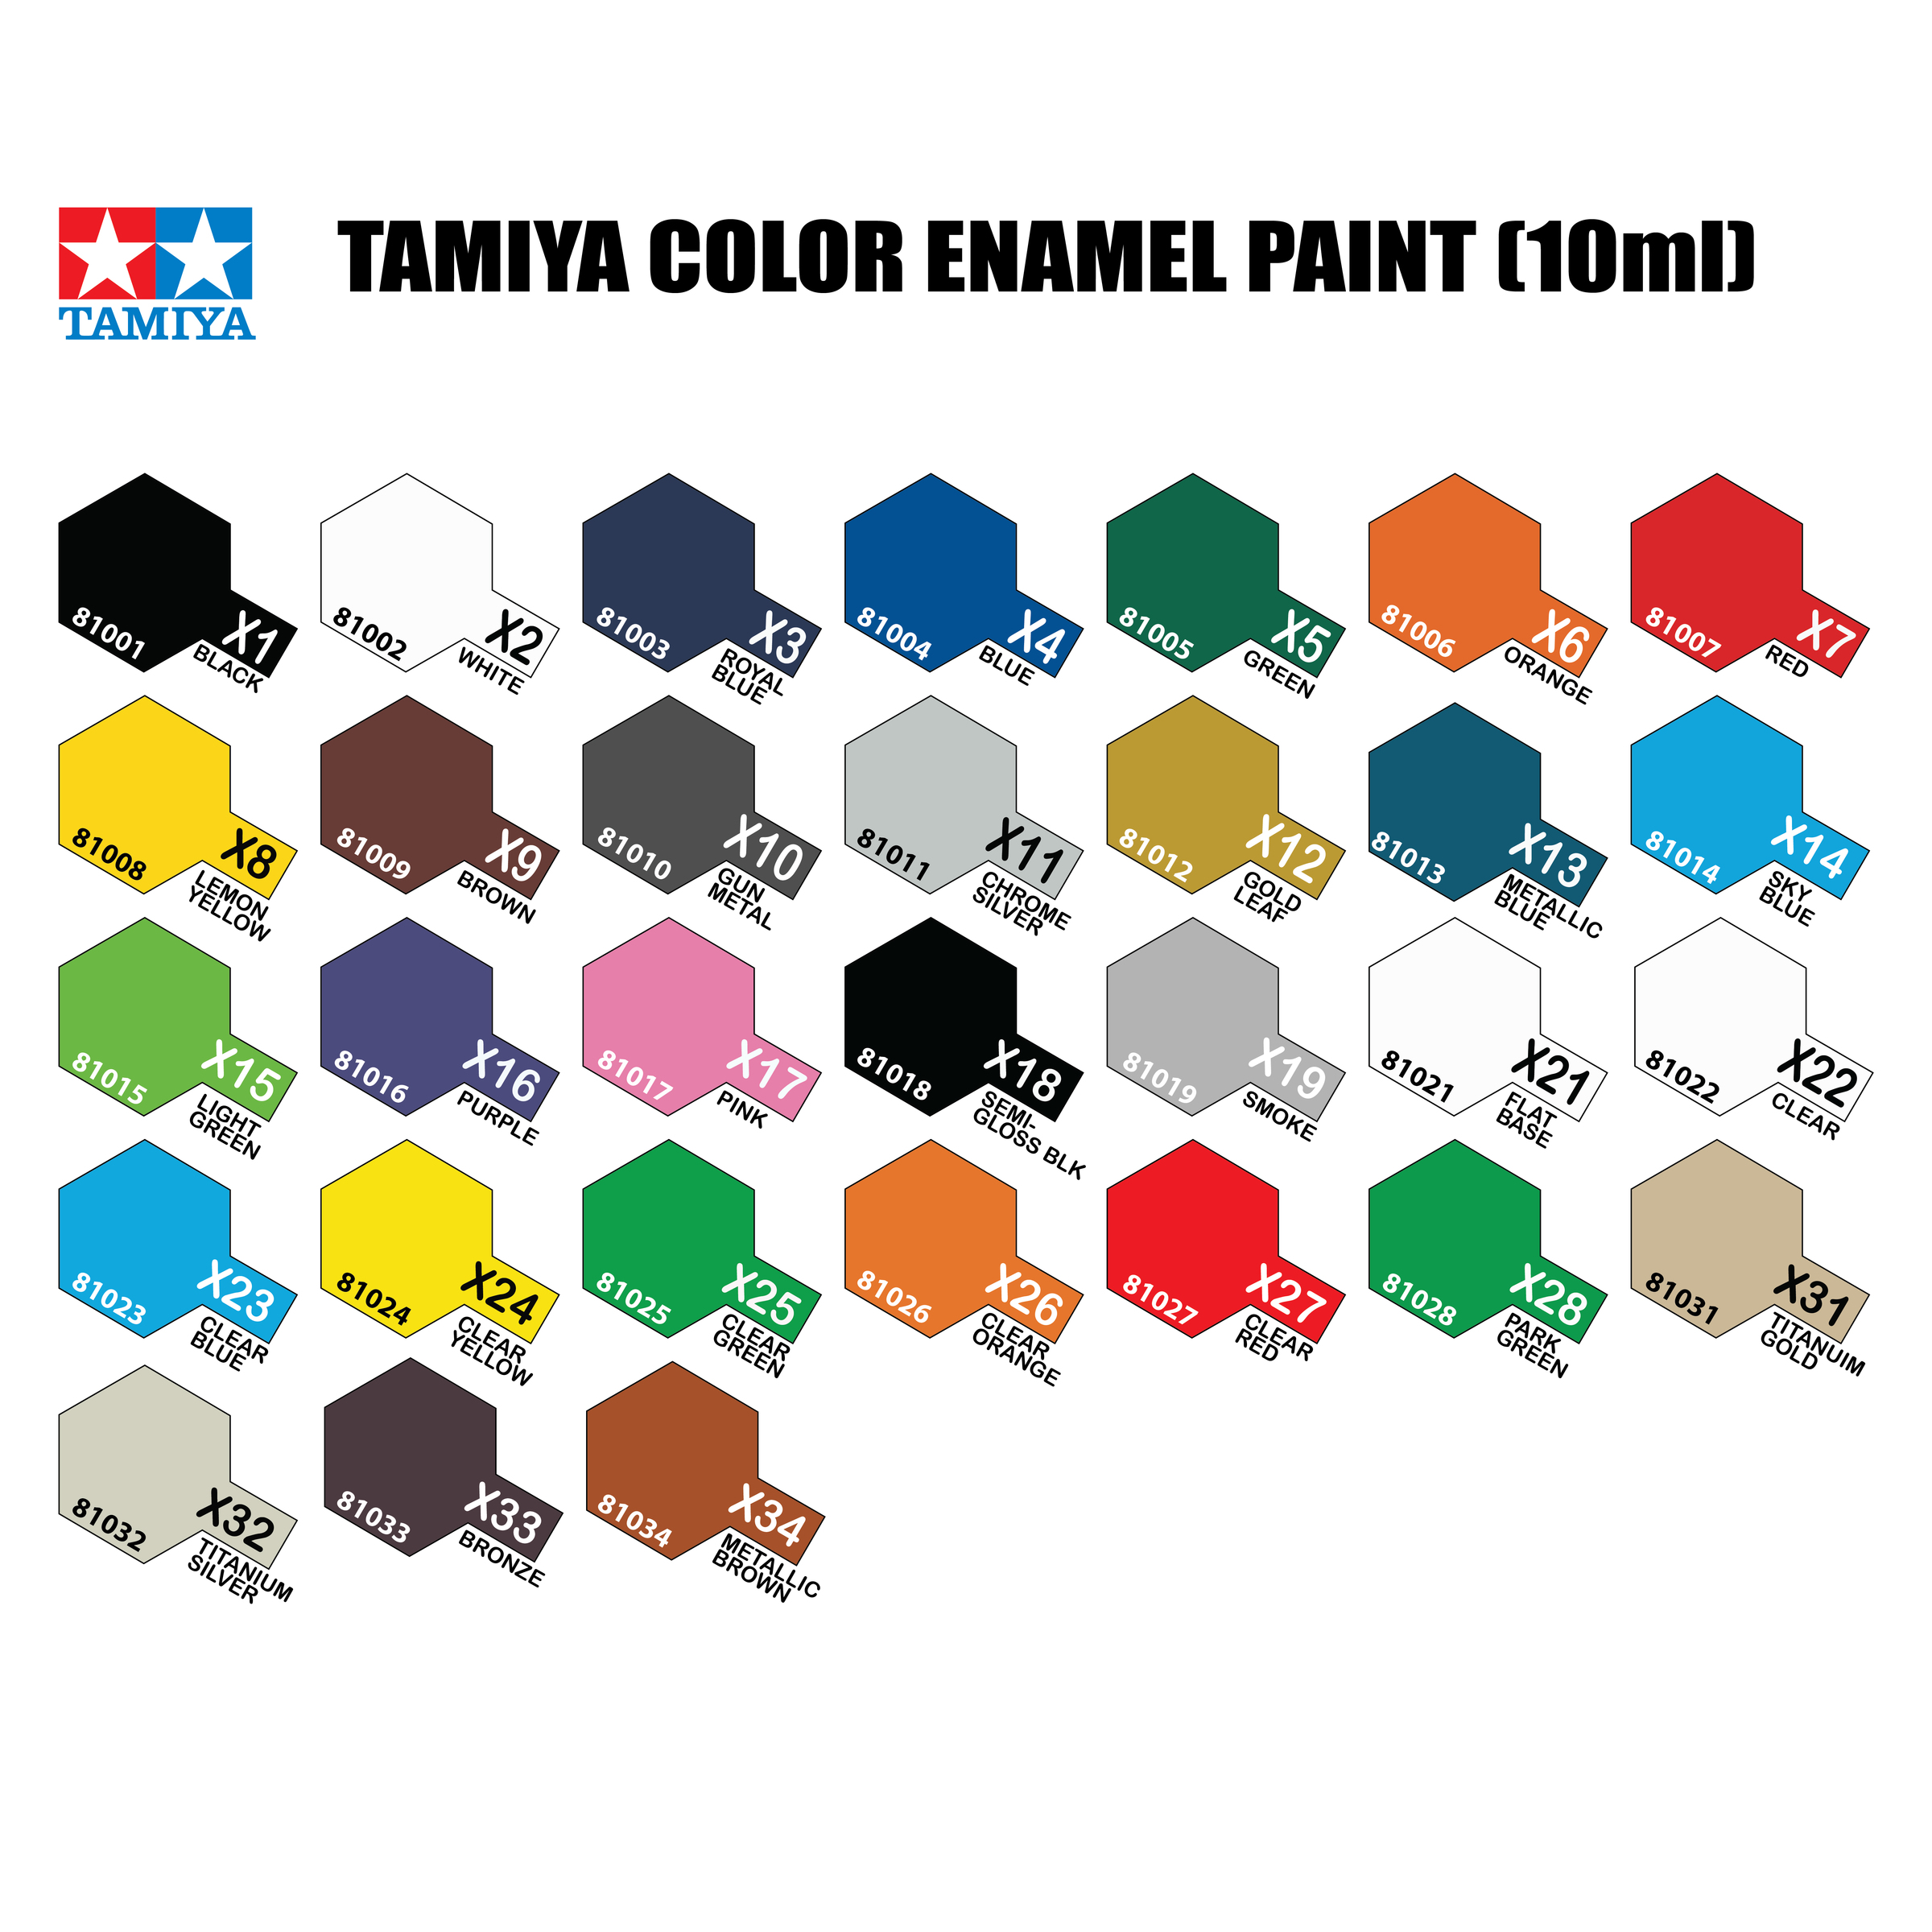 Tamiya As Color Chart